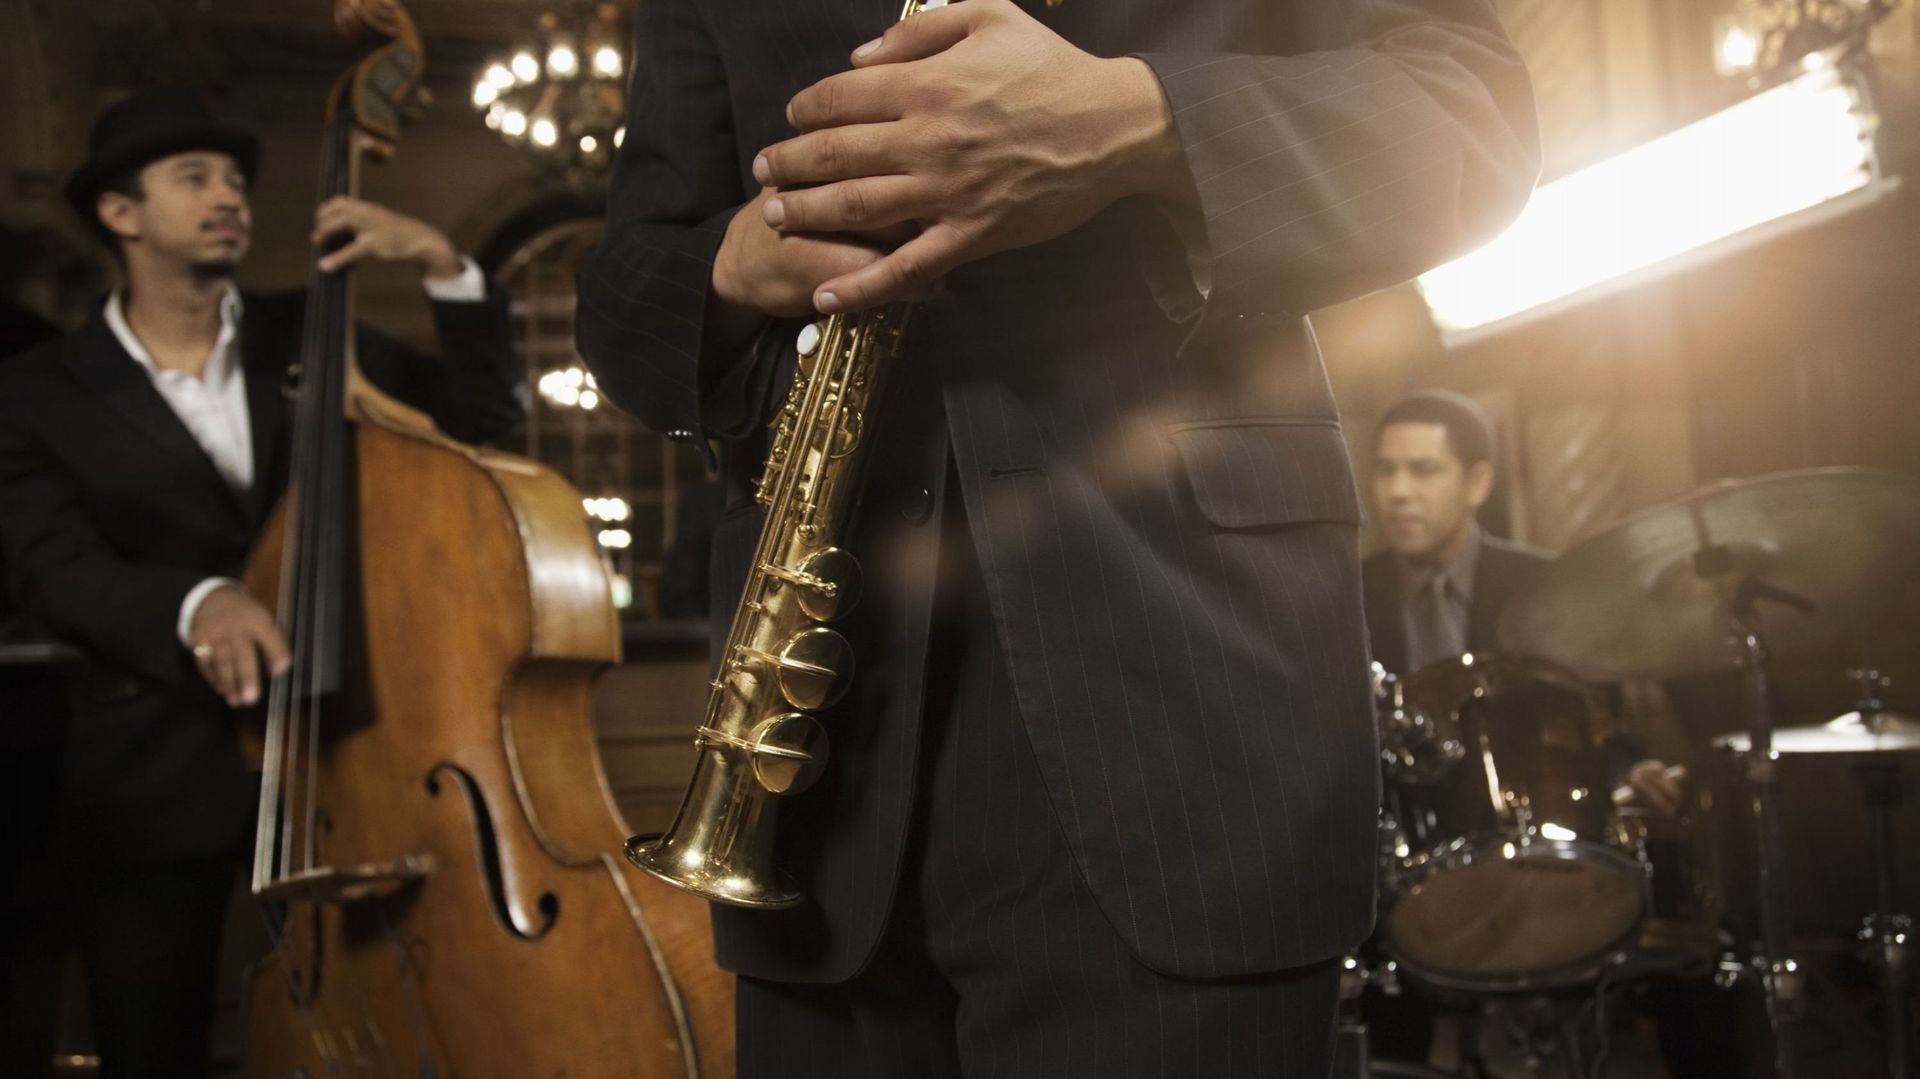 Le centre culturel de Gerpinnes emmène son public à la découverte des standards de jazz